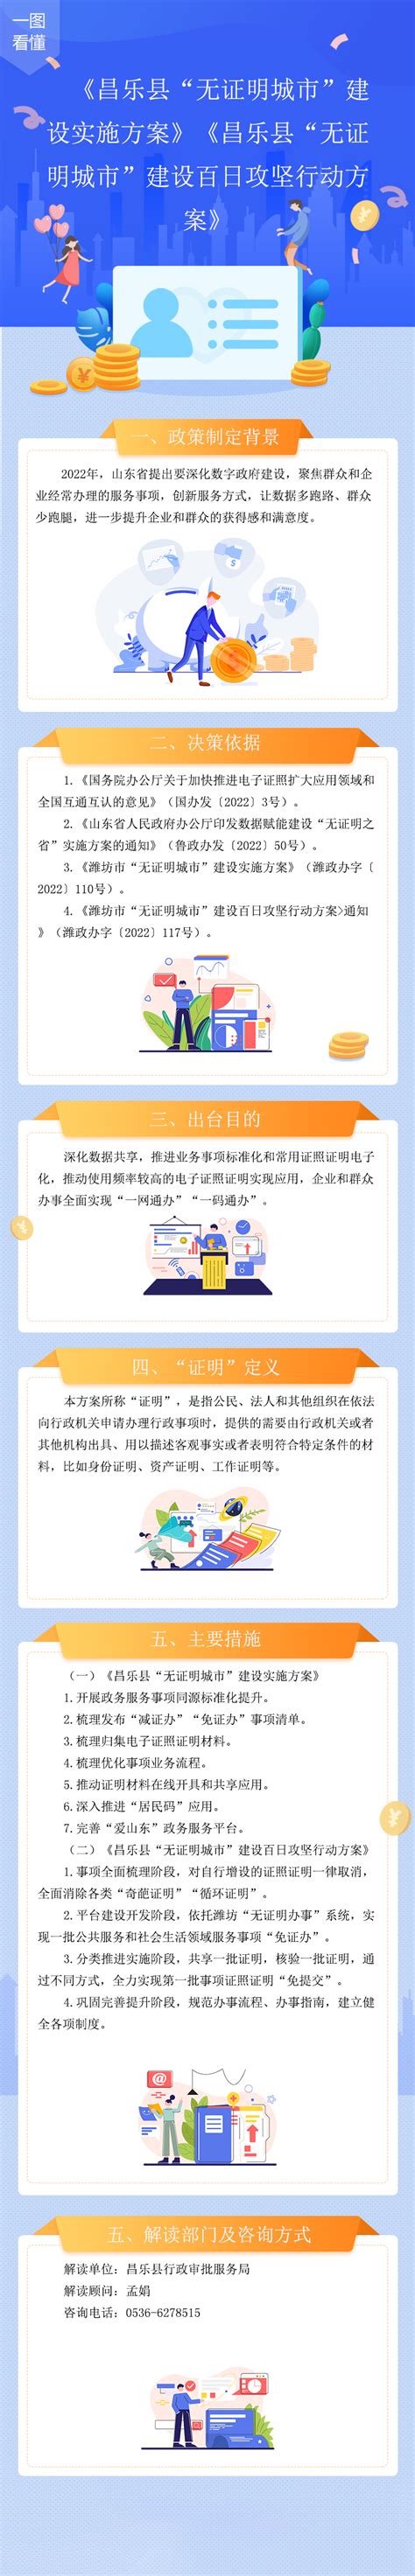 爱昌乐app下载-爱昌乐移动客户端 1.5.12 安卓版-新云软件园